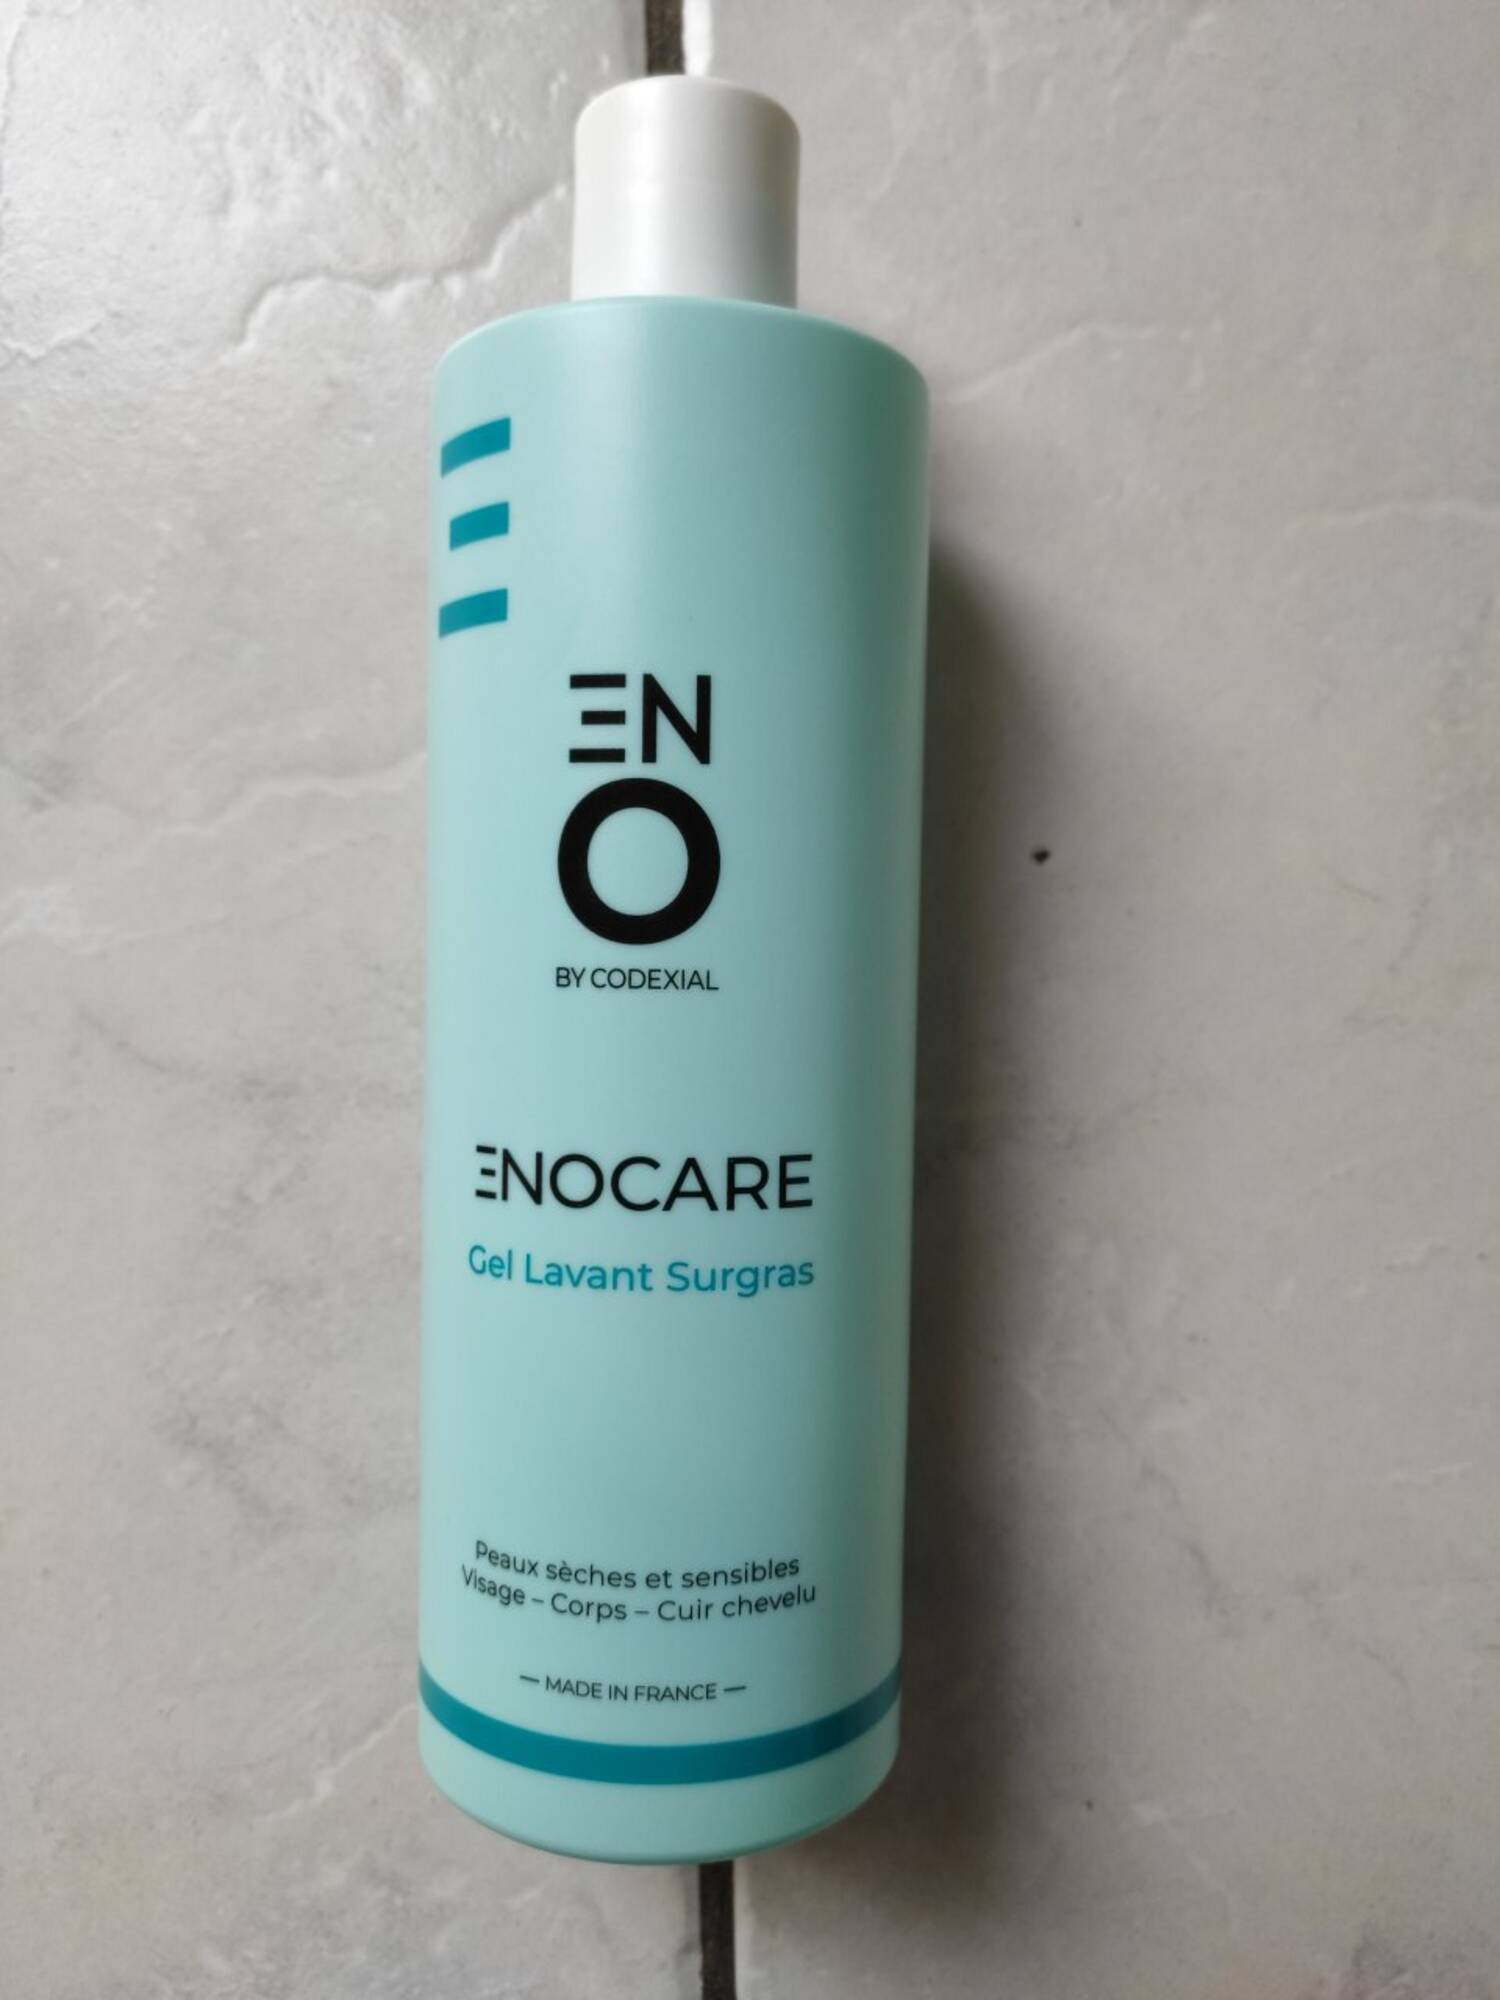 ENO BY CODEXIAL - Enocare - gel lavant surgras